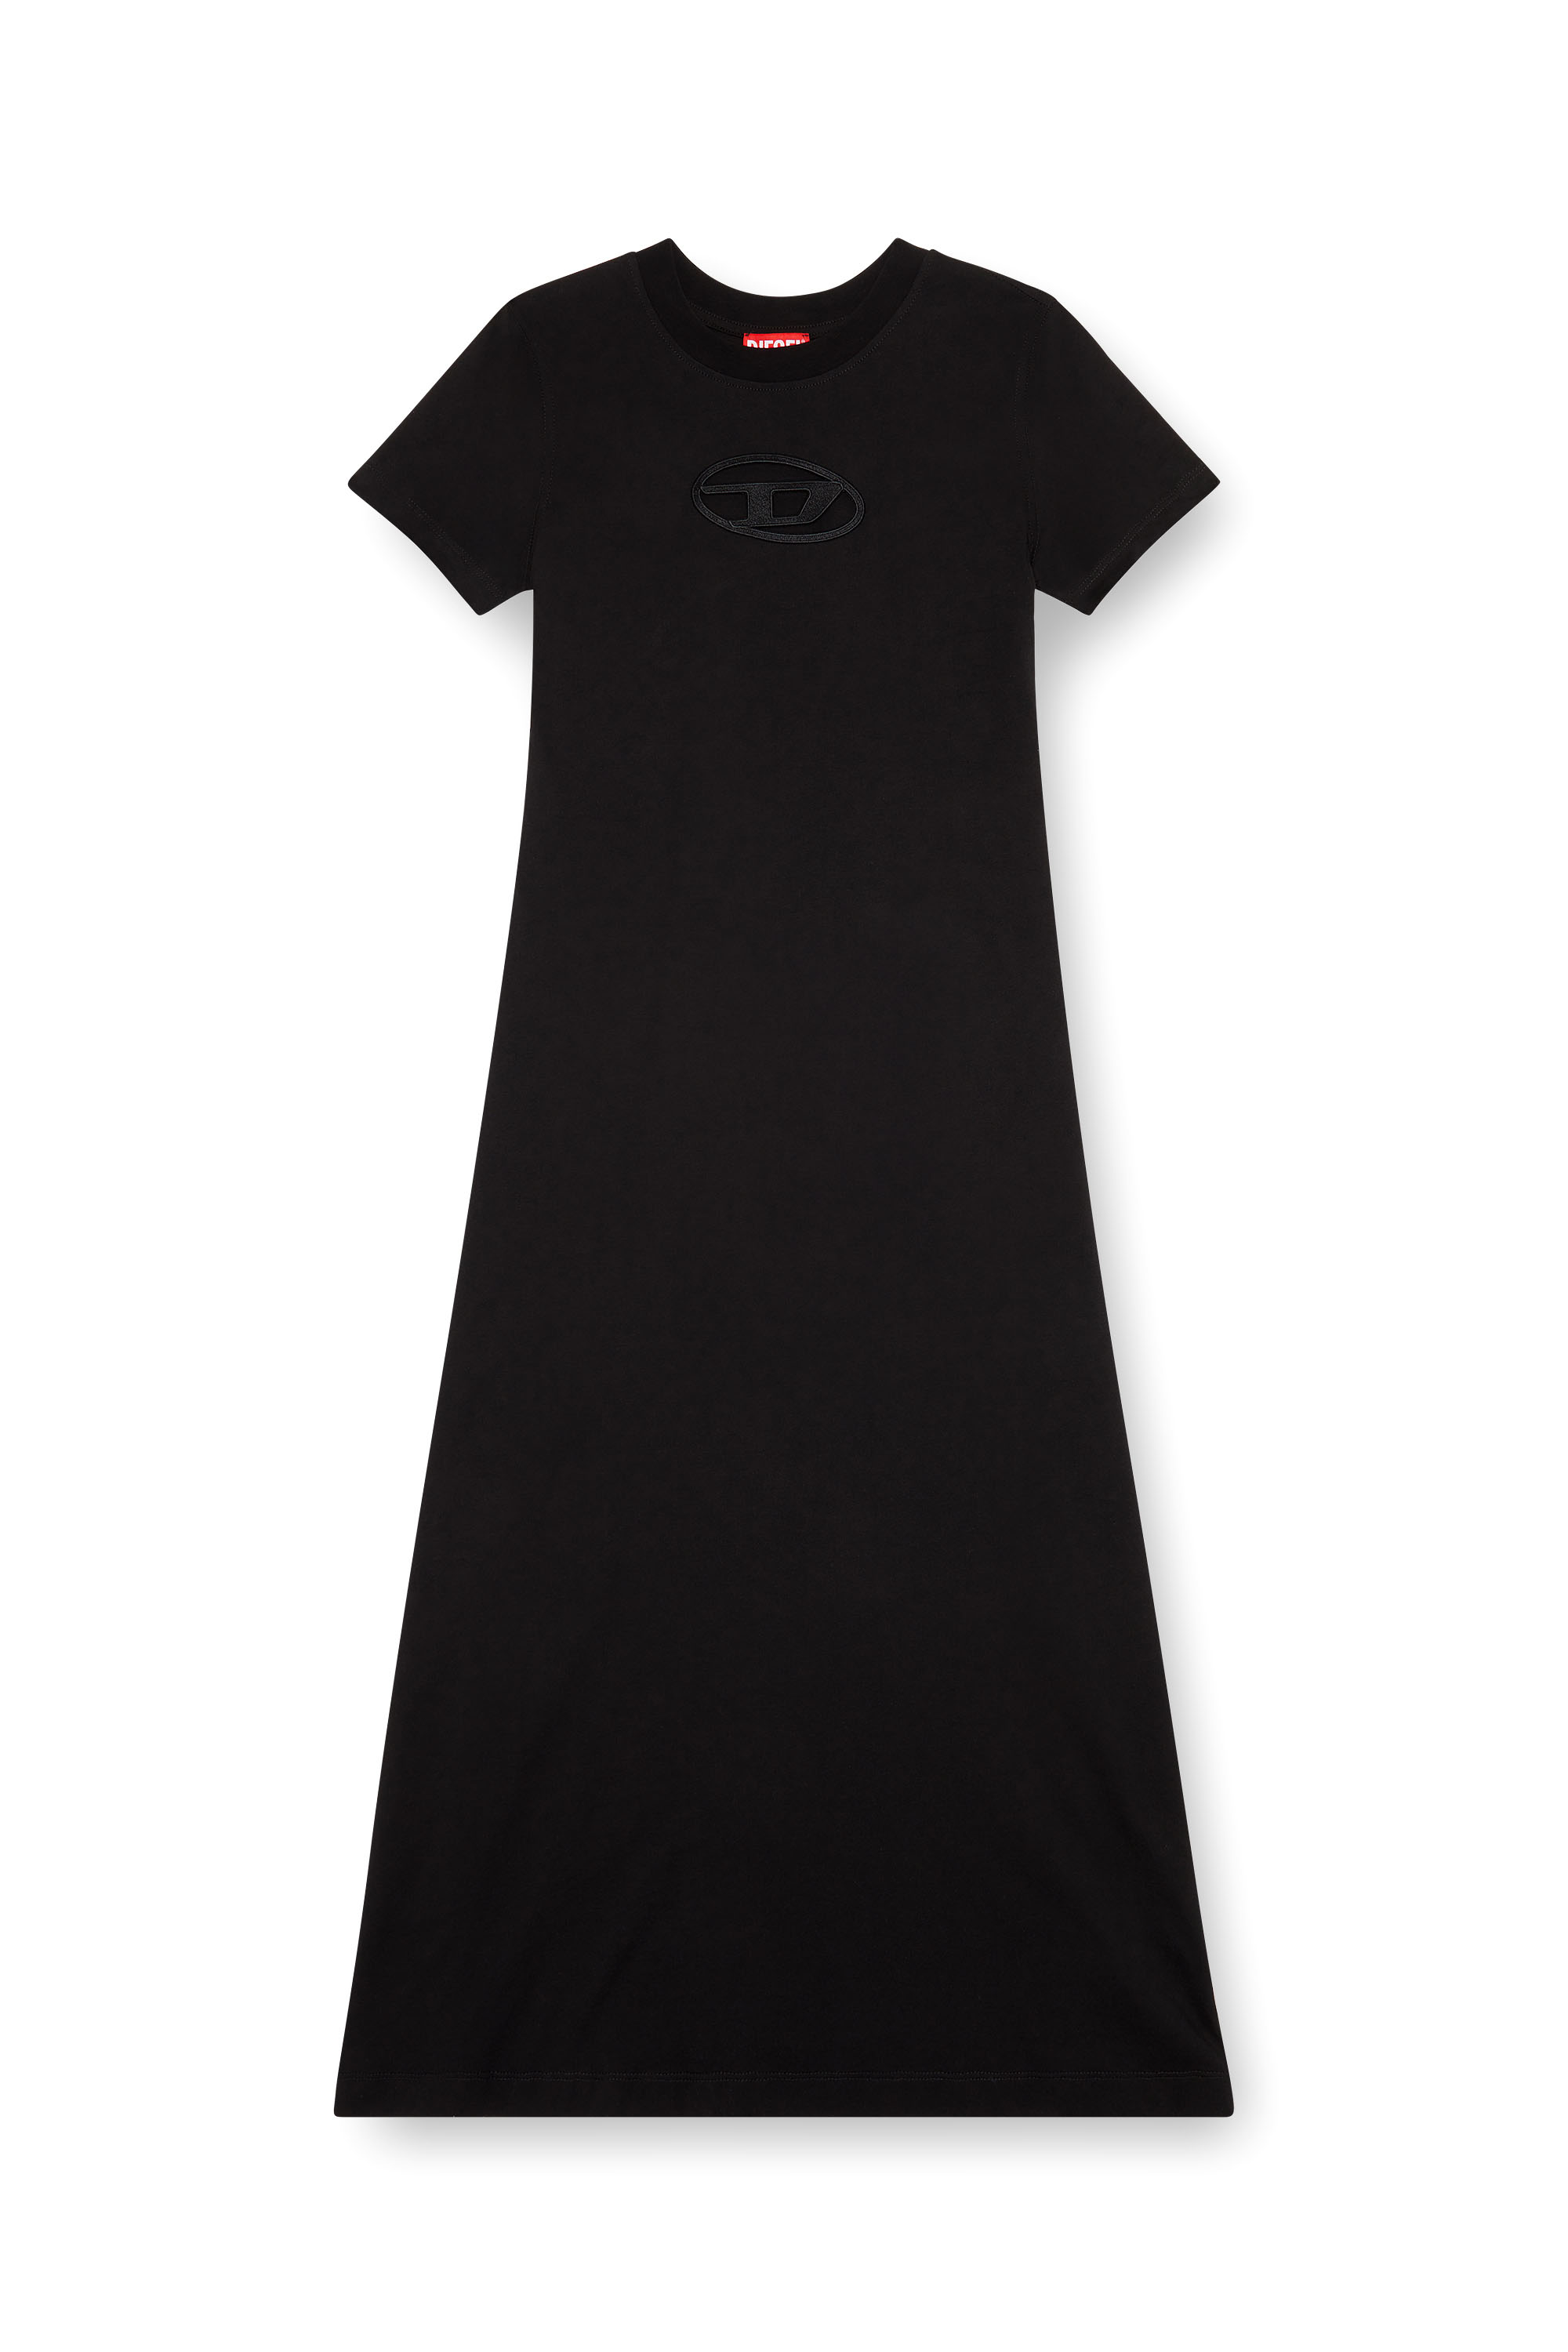 Diesel - D-ALIN-OD, Mujer Vestido camiseta con D bordada in Negro - Image 2